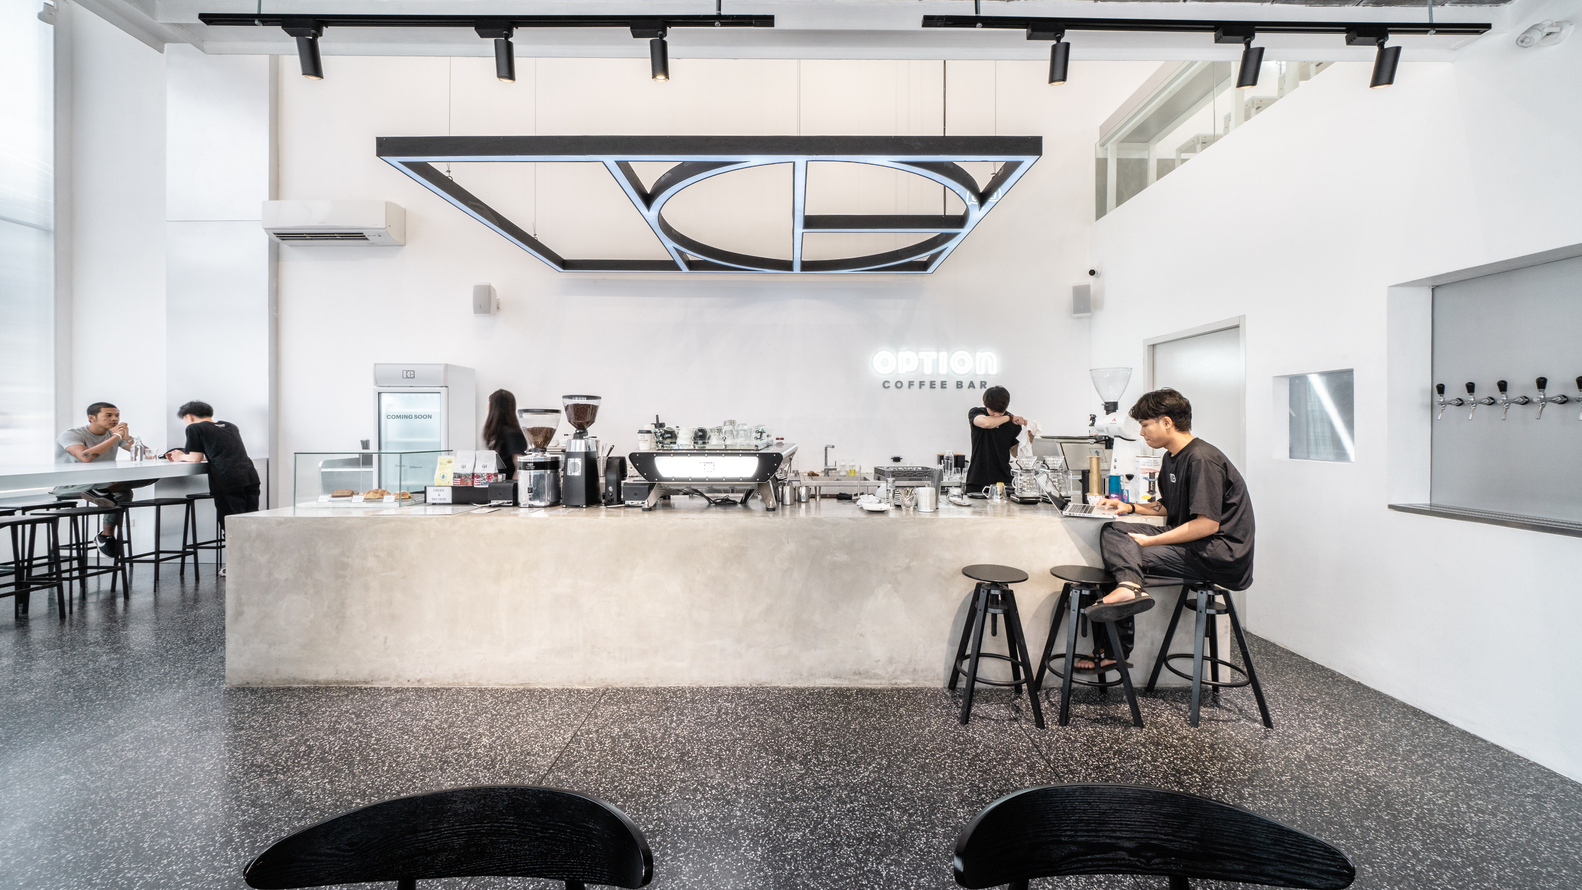 طراحی فضاهای کافه به نحوی صورت گرفته که برای هر دوی این عملکردها مناسب باشد